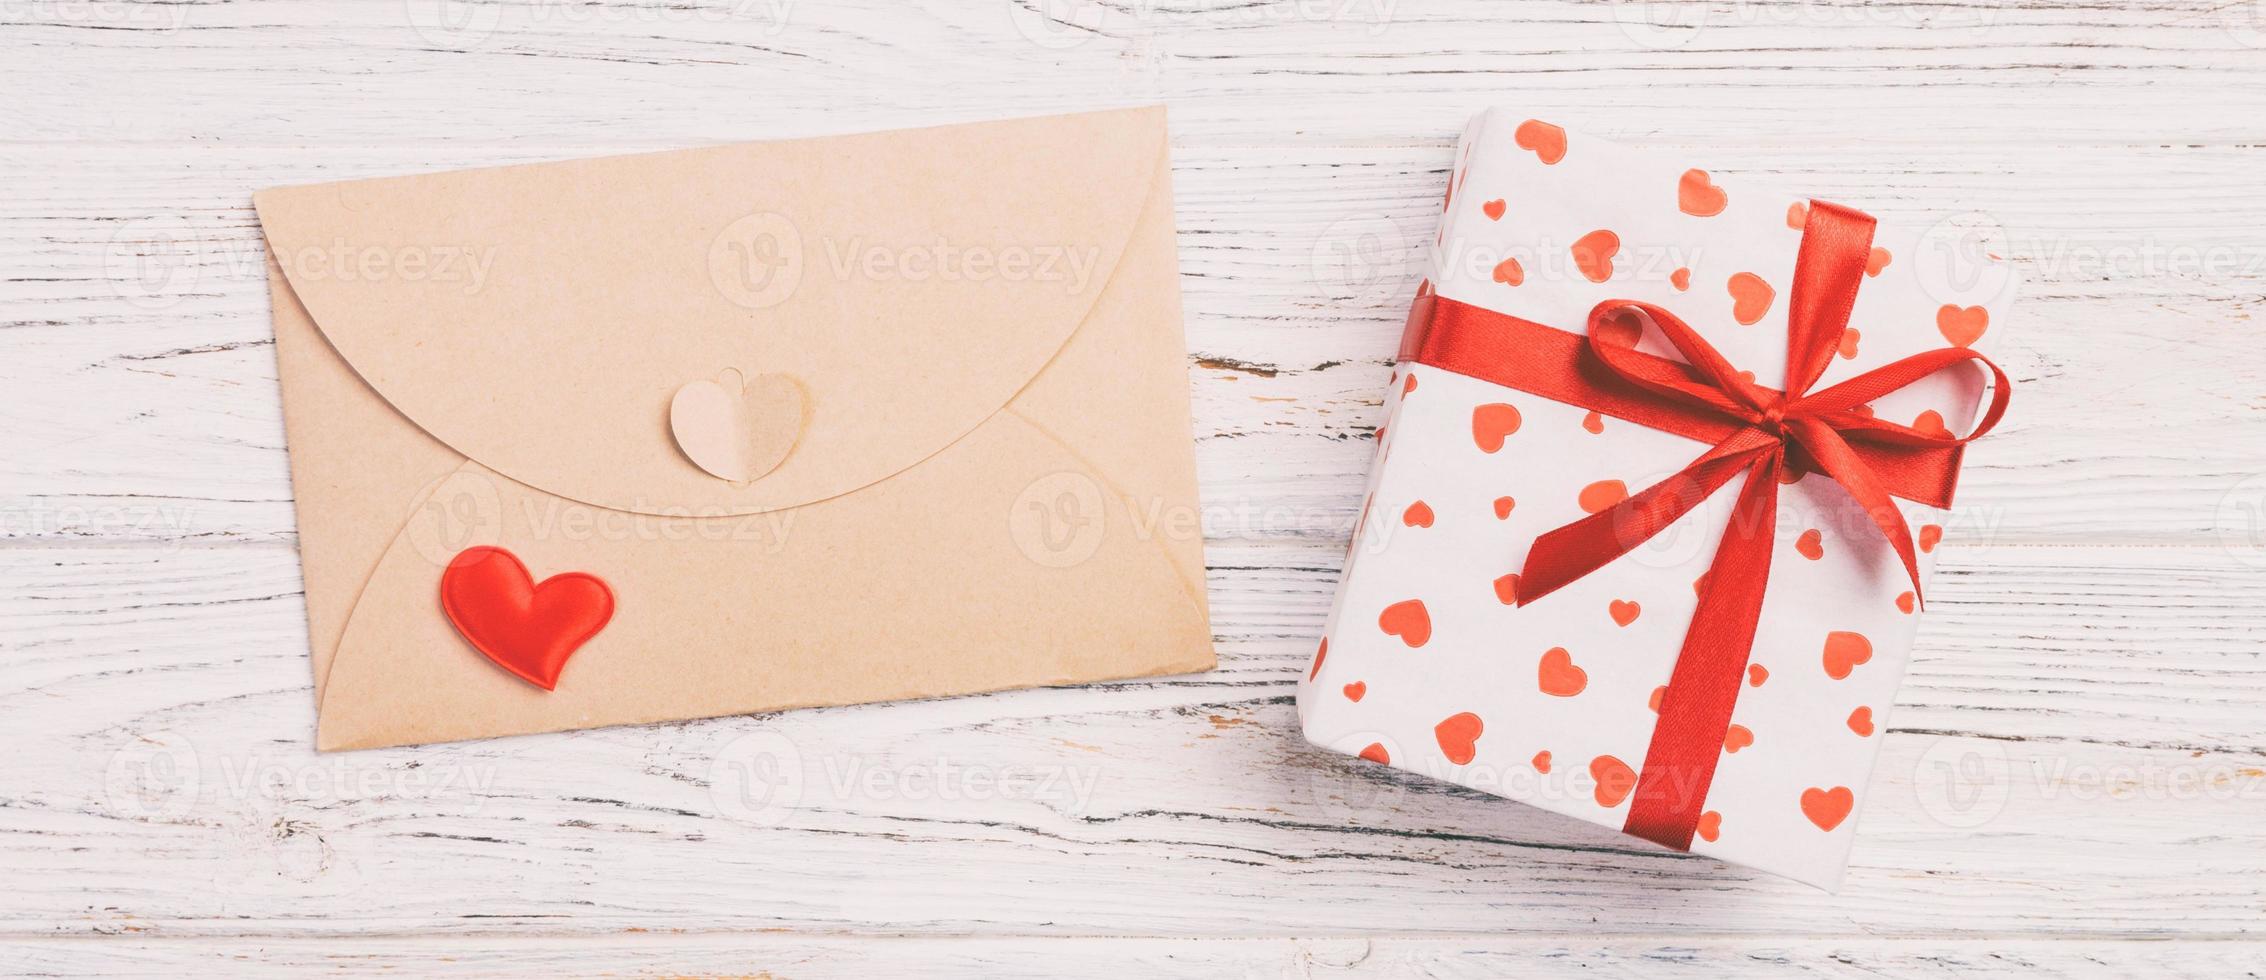 correio de envelope com coração vermelho e caixa de presente sobre fundo branco de madeira. cartão de dia dos namorados, amor ou conceito de saudação de casamento foto